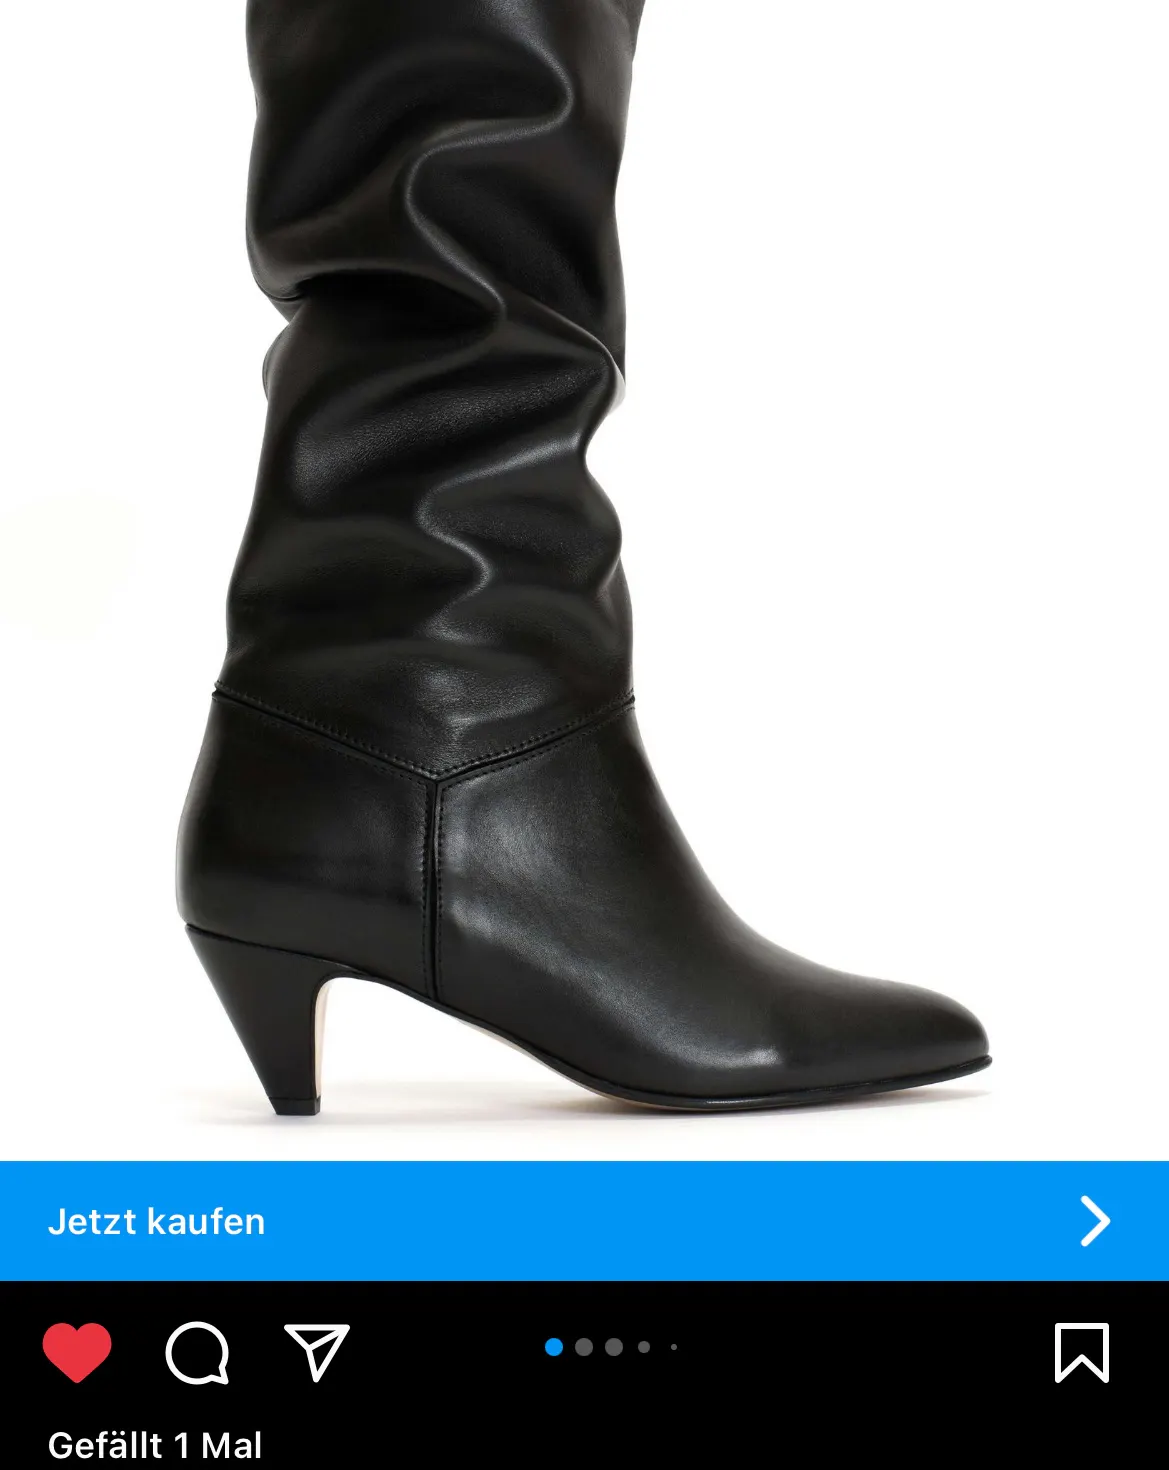 Instagram-Werbung für schwarze Stiefel, darunter ein rotes Fav-Herz